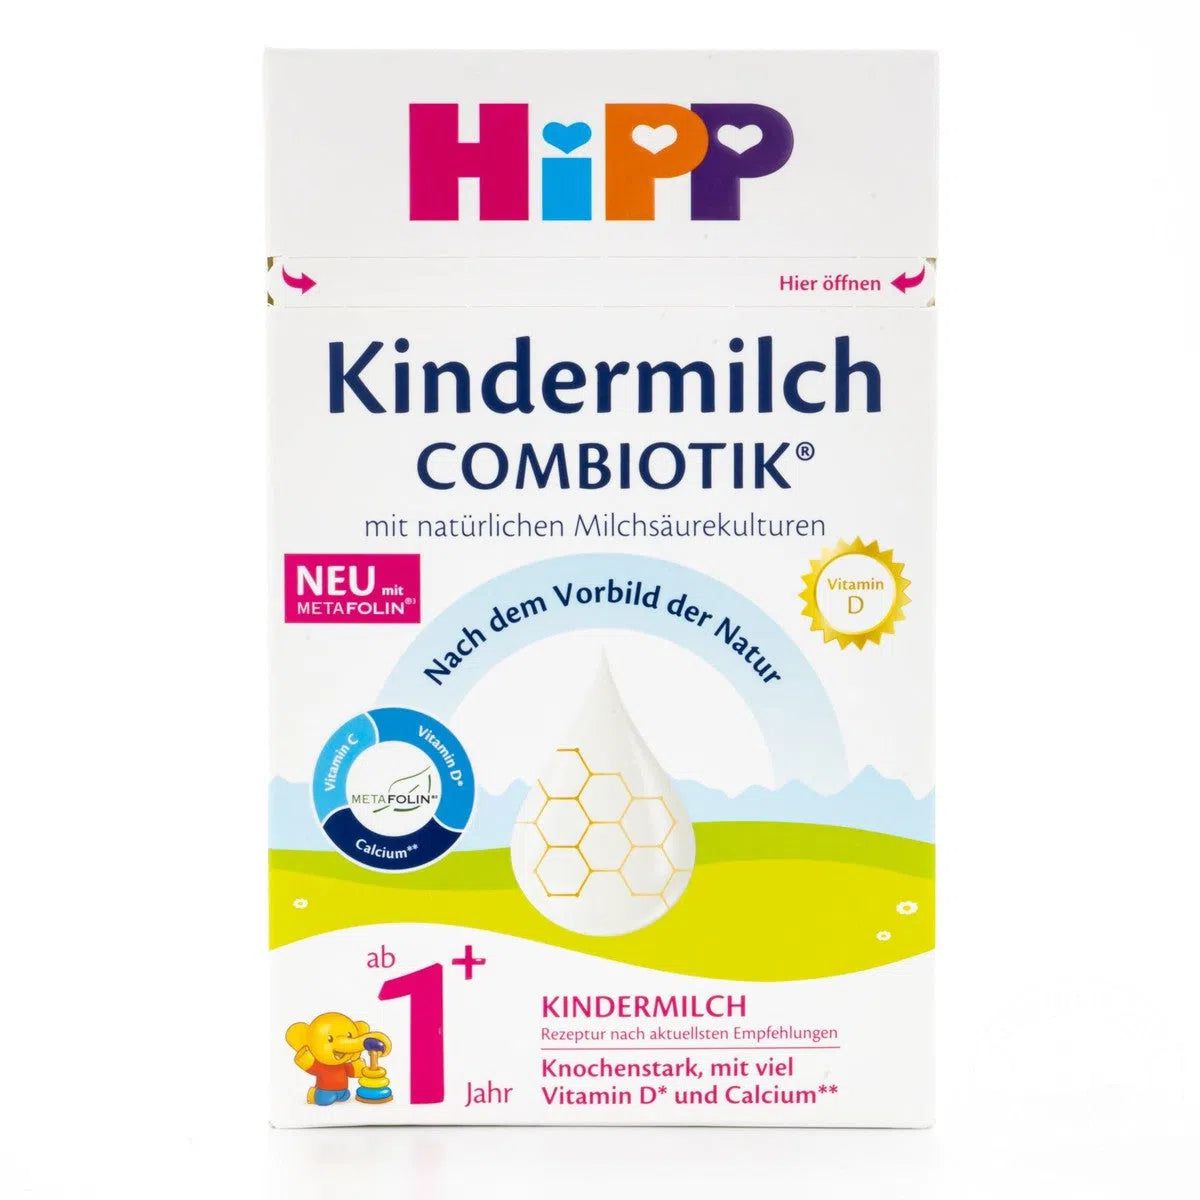 HiPP 1+ Kindermilch Formula 12+ Months (600g) - 8 Boxes